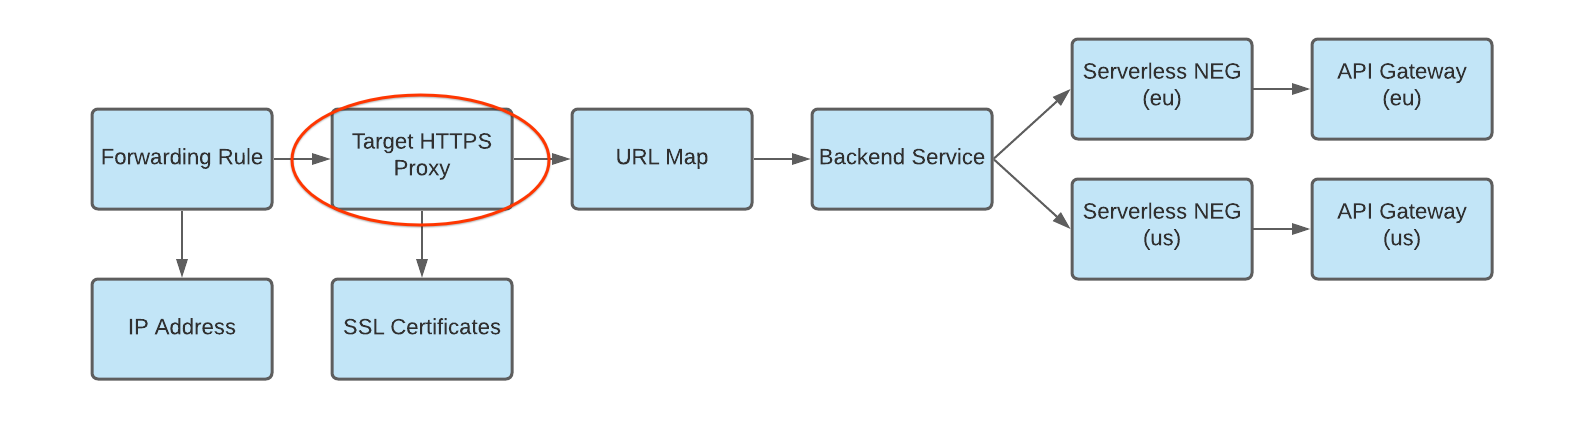 Diagramm von HTTP-Proxy zu URL-Zuordnung